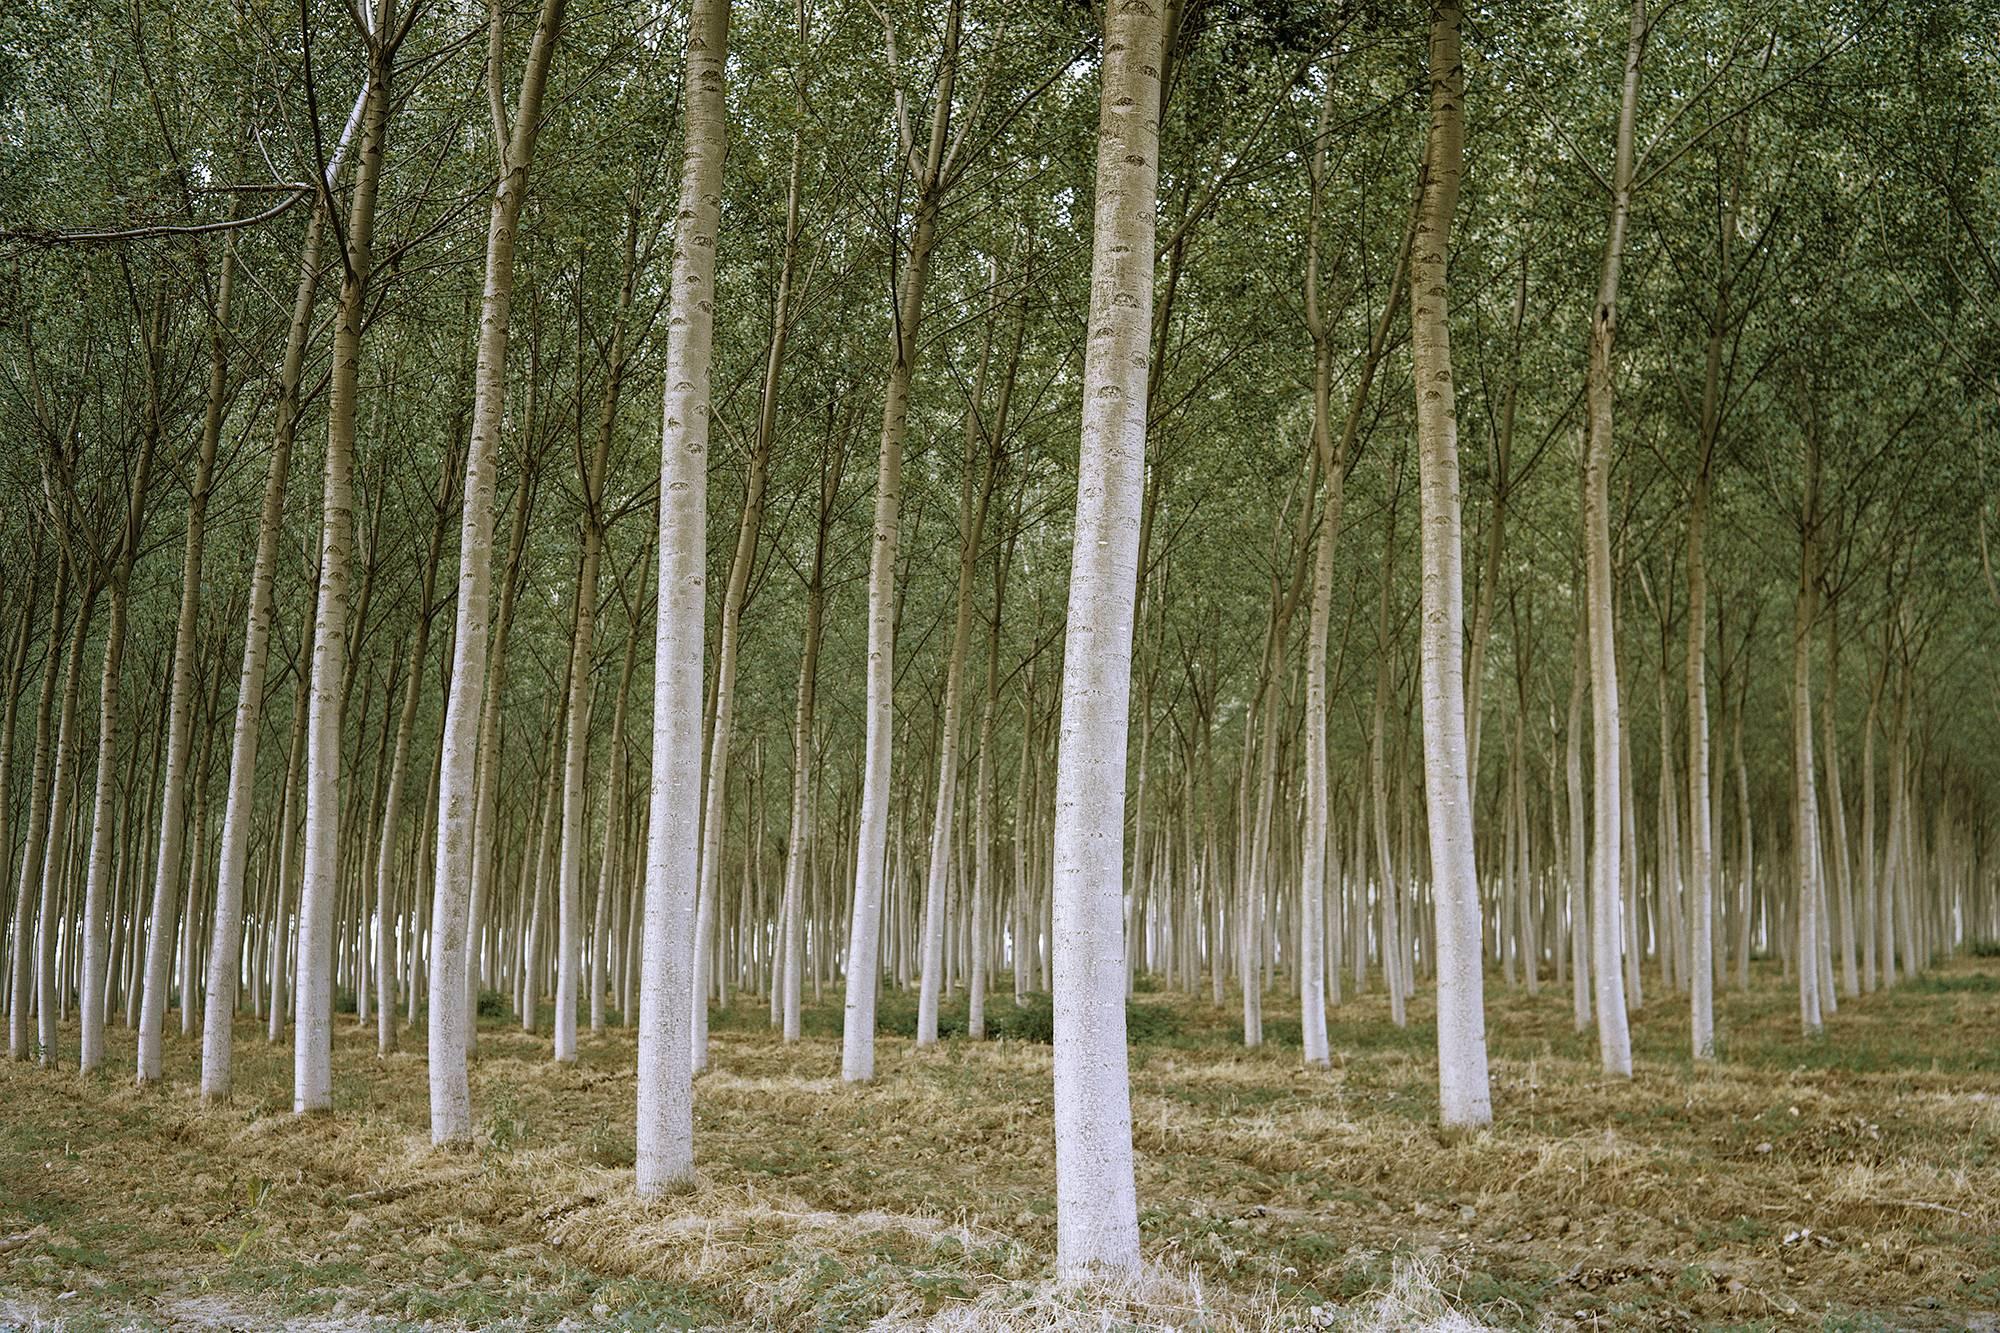 Figurative Photograph Stephen Mallon - Photographie encadrée « Italienn Forest », 40""x60" signée et édition n° 4/5 au verso